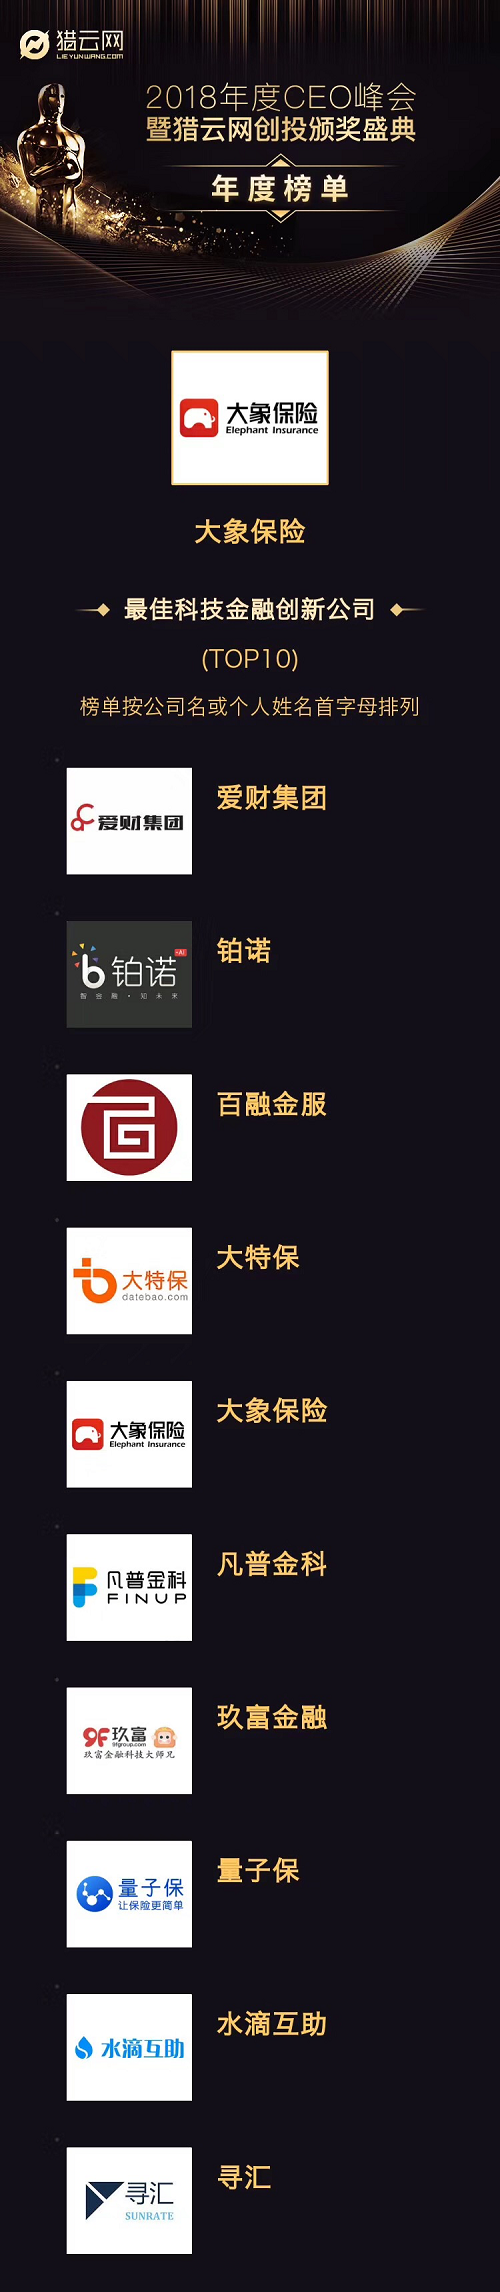 大象保險榮獲獵雲網創投峰會「最佳科技金融創新公司」獎項 台灣新聞 第1張